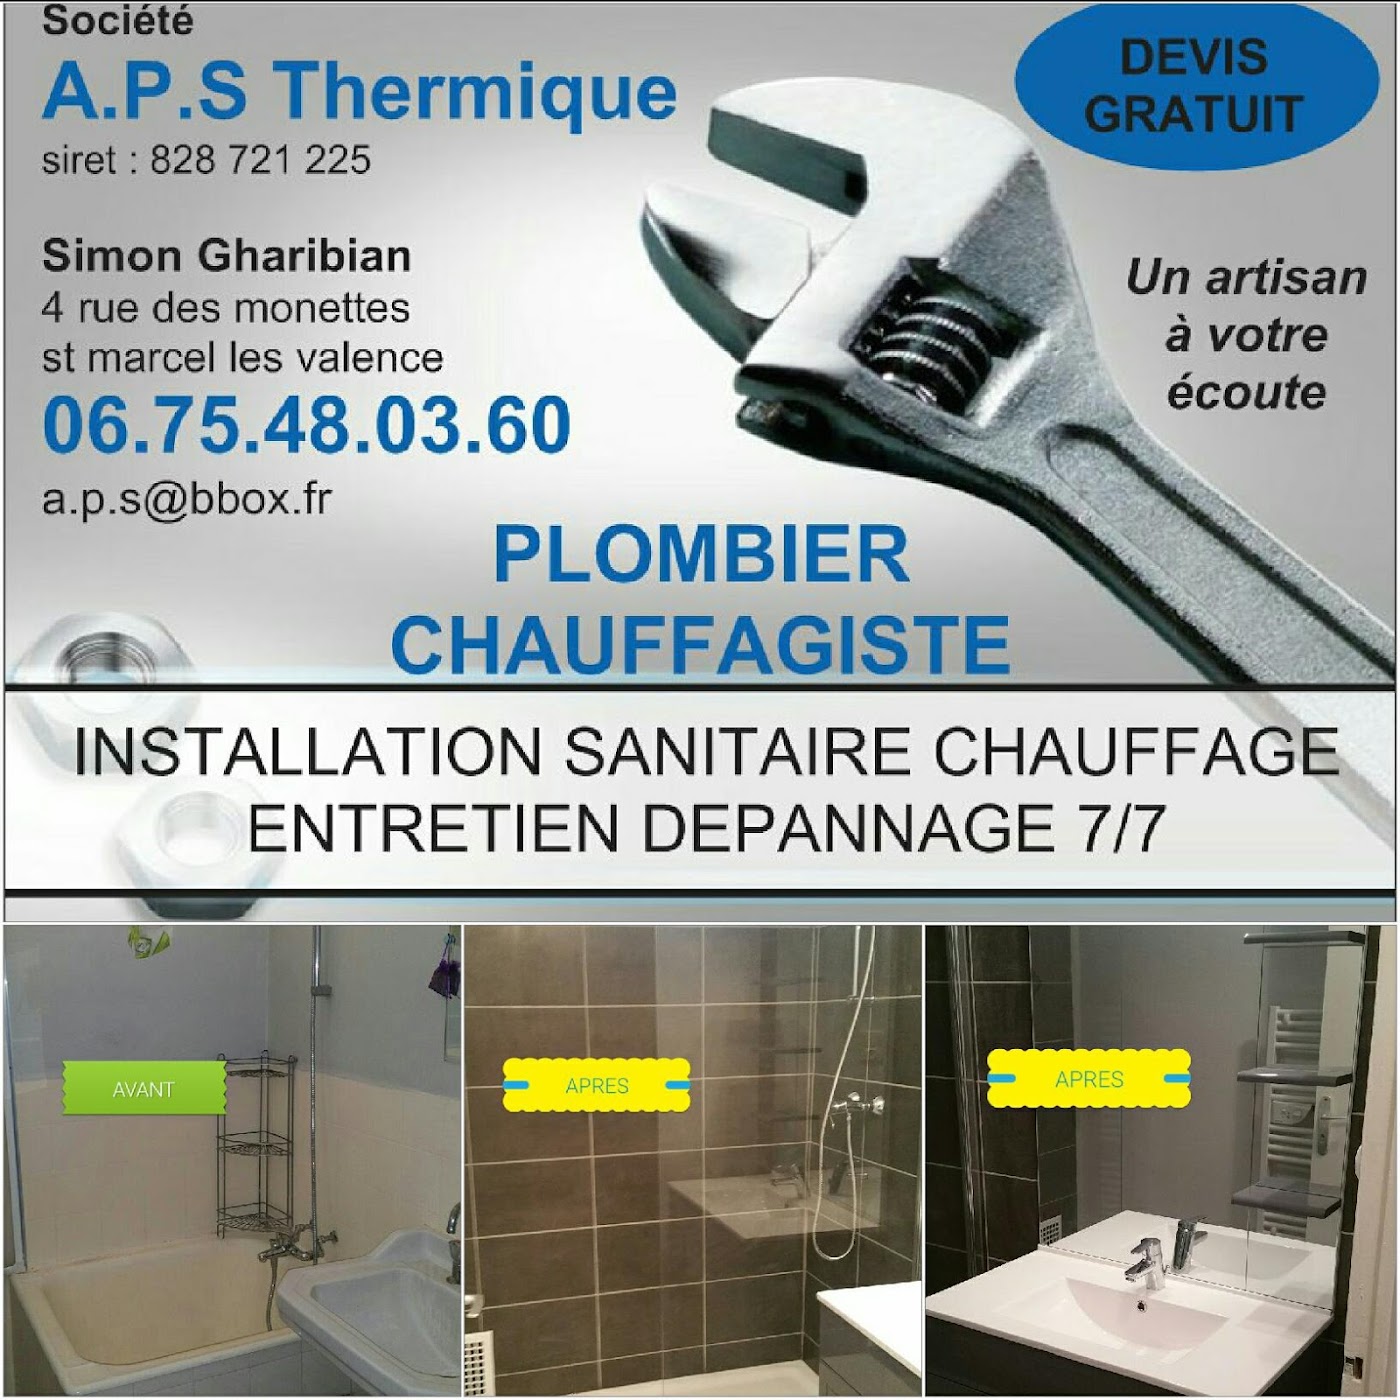 A.P.S Thermique